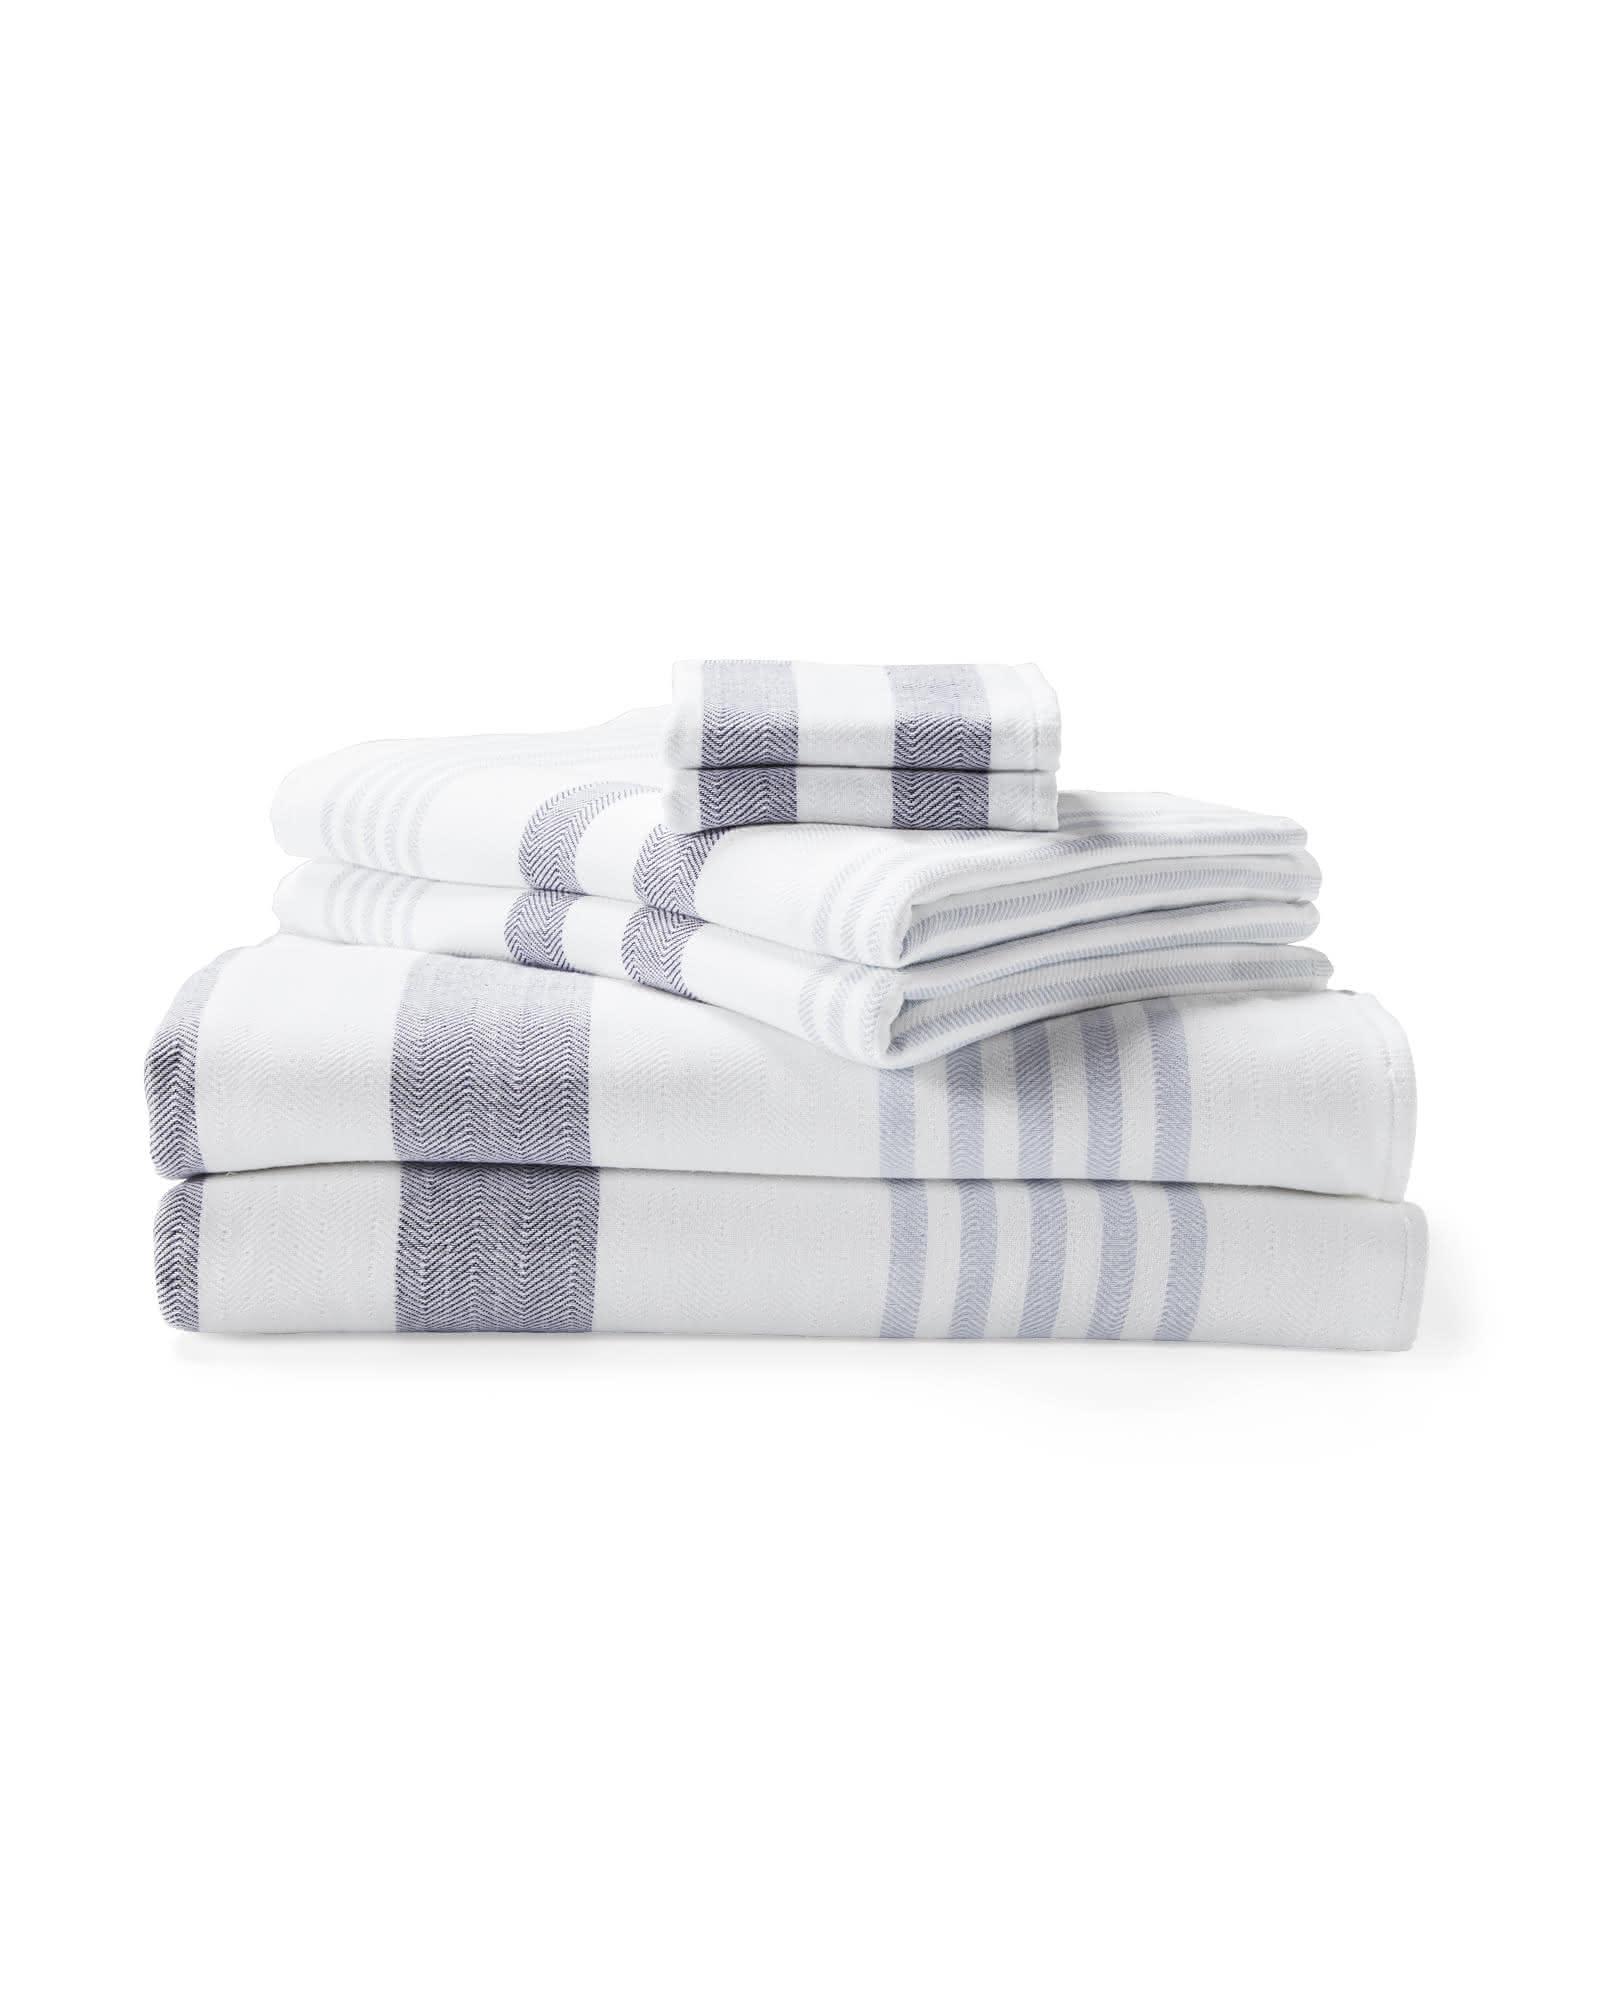 Blissful Alpaca Kitchen Towels